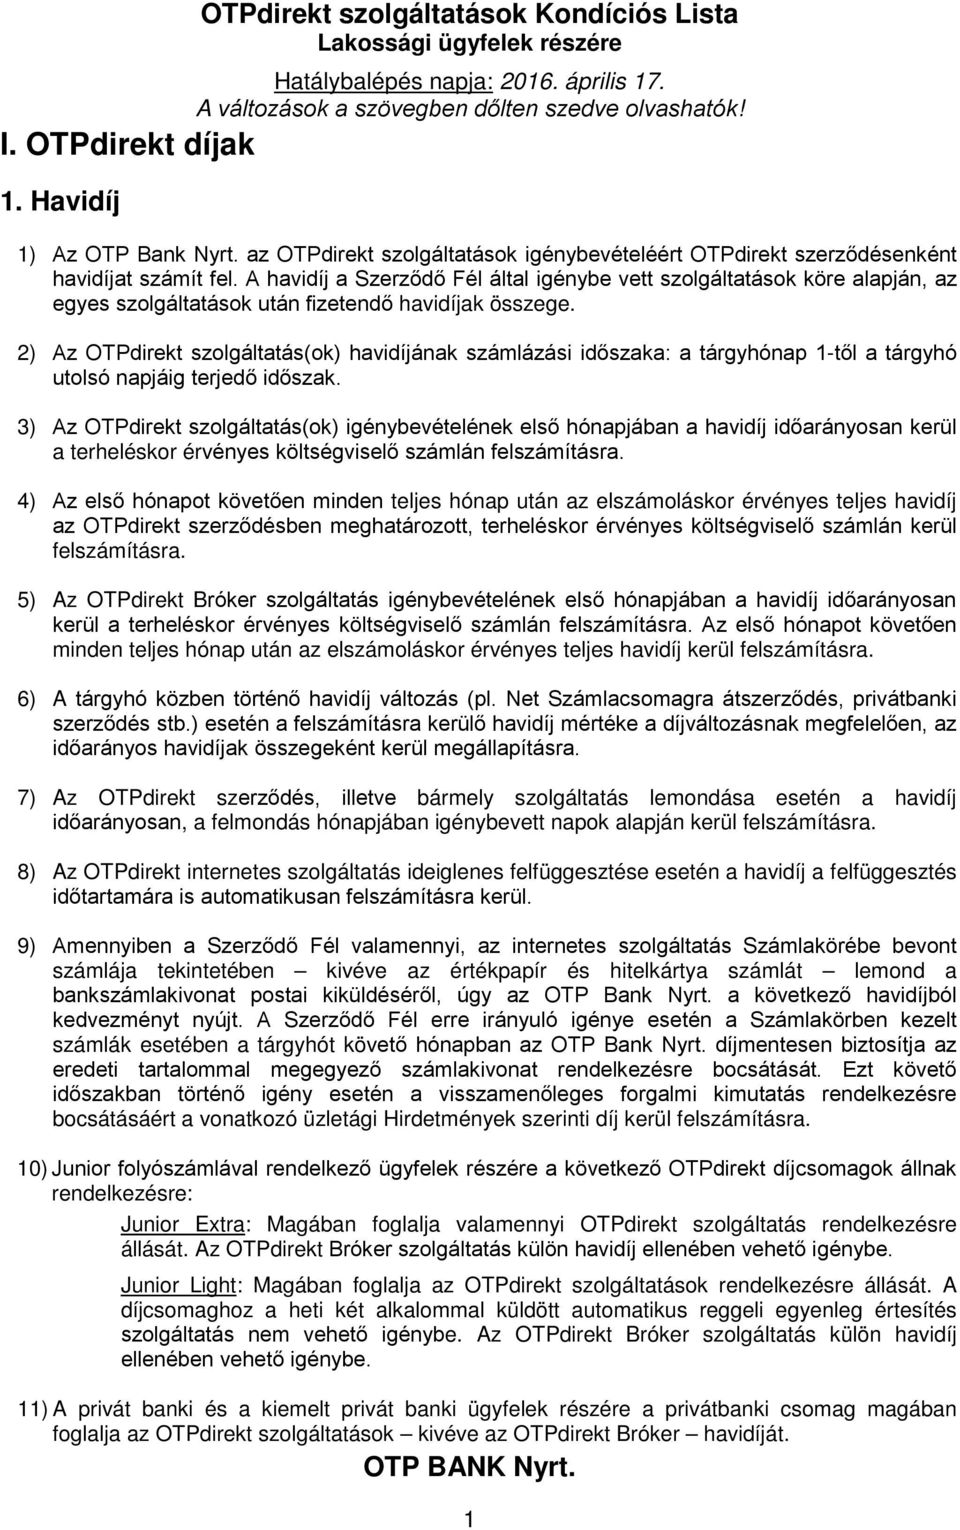 1. Havidíj. OTP BANK Nyrt. - PDF Ingyenes letöltés